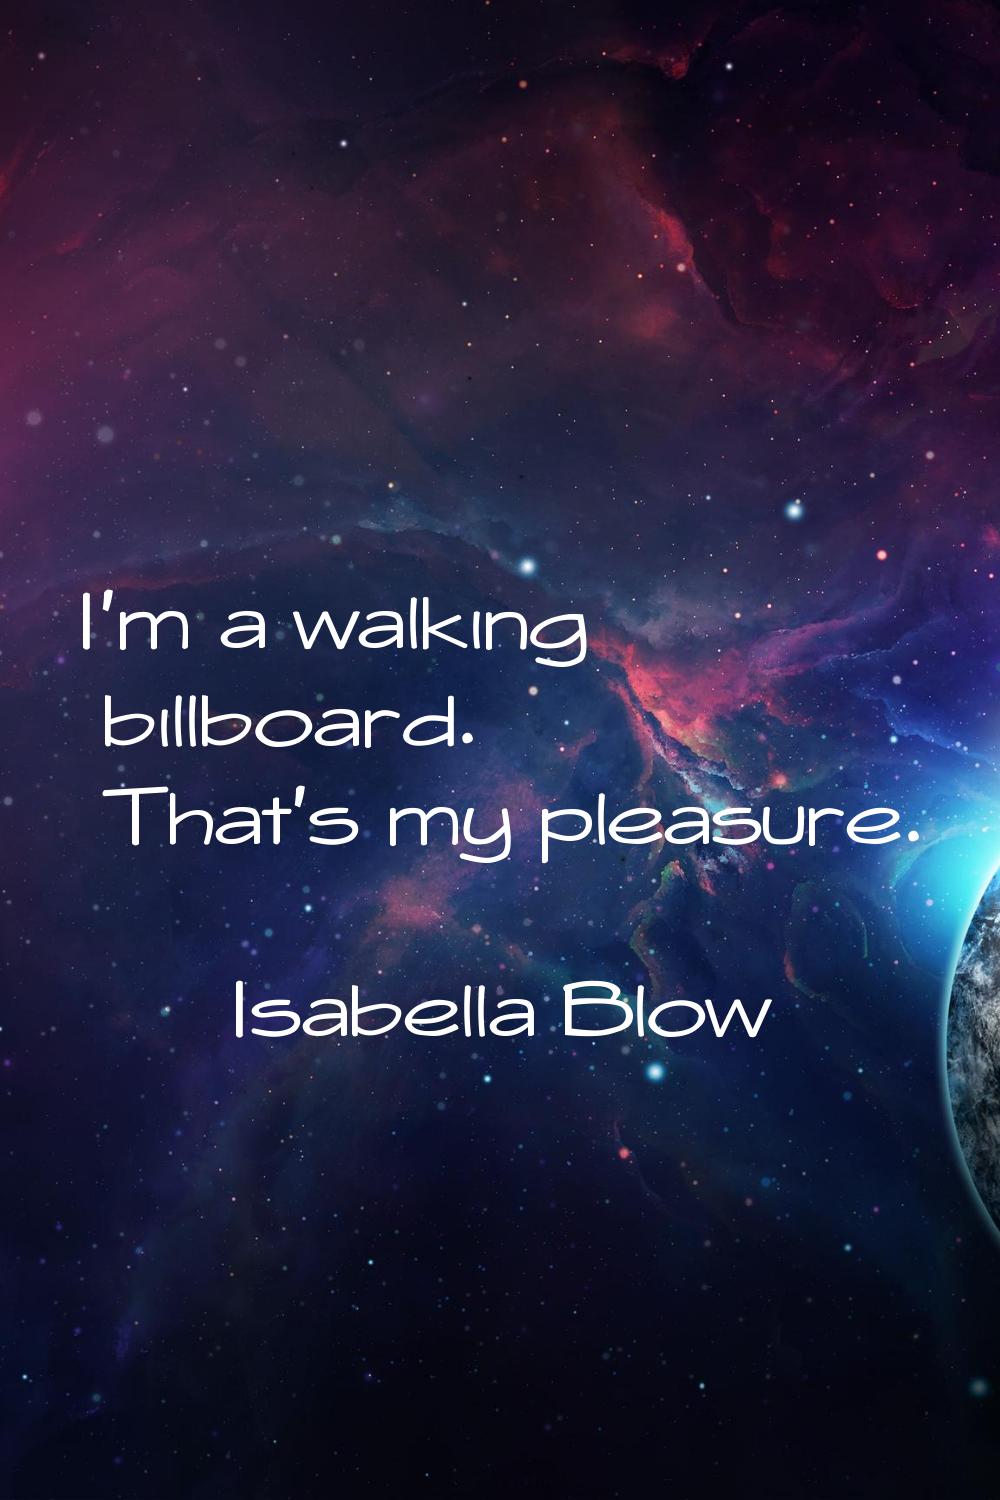 I'm a walking billboard. That's my pleasure.